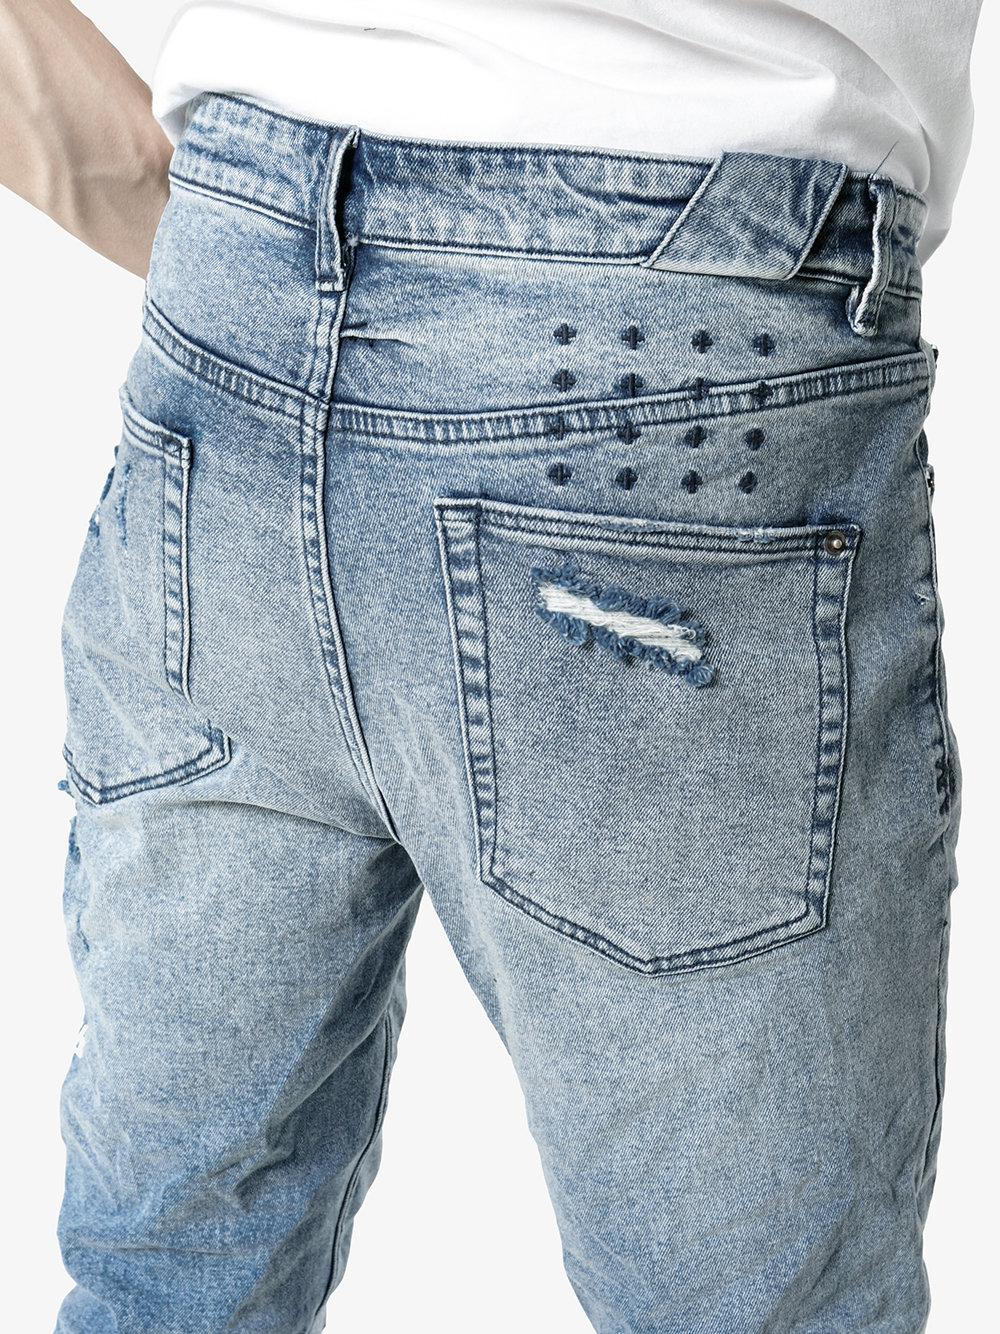 Ksubi Denim Chitch Underground Jeans in Blue for Men - Lyst